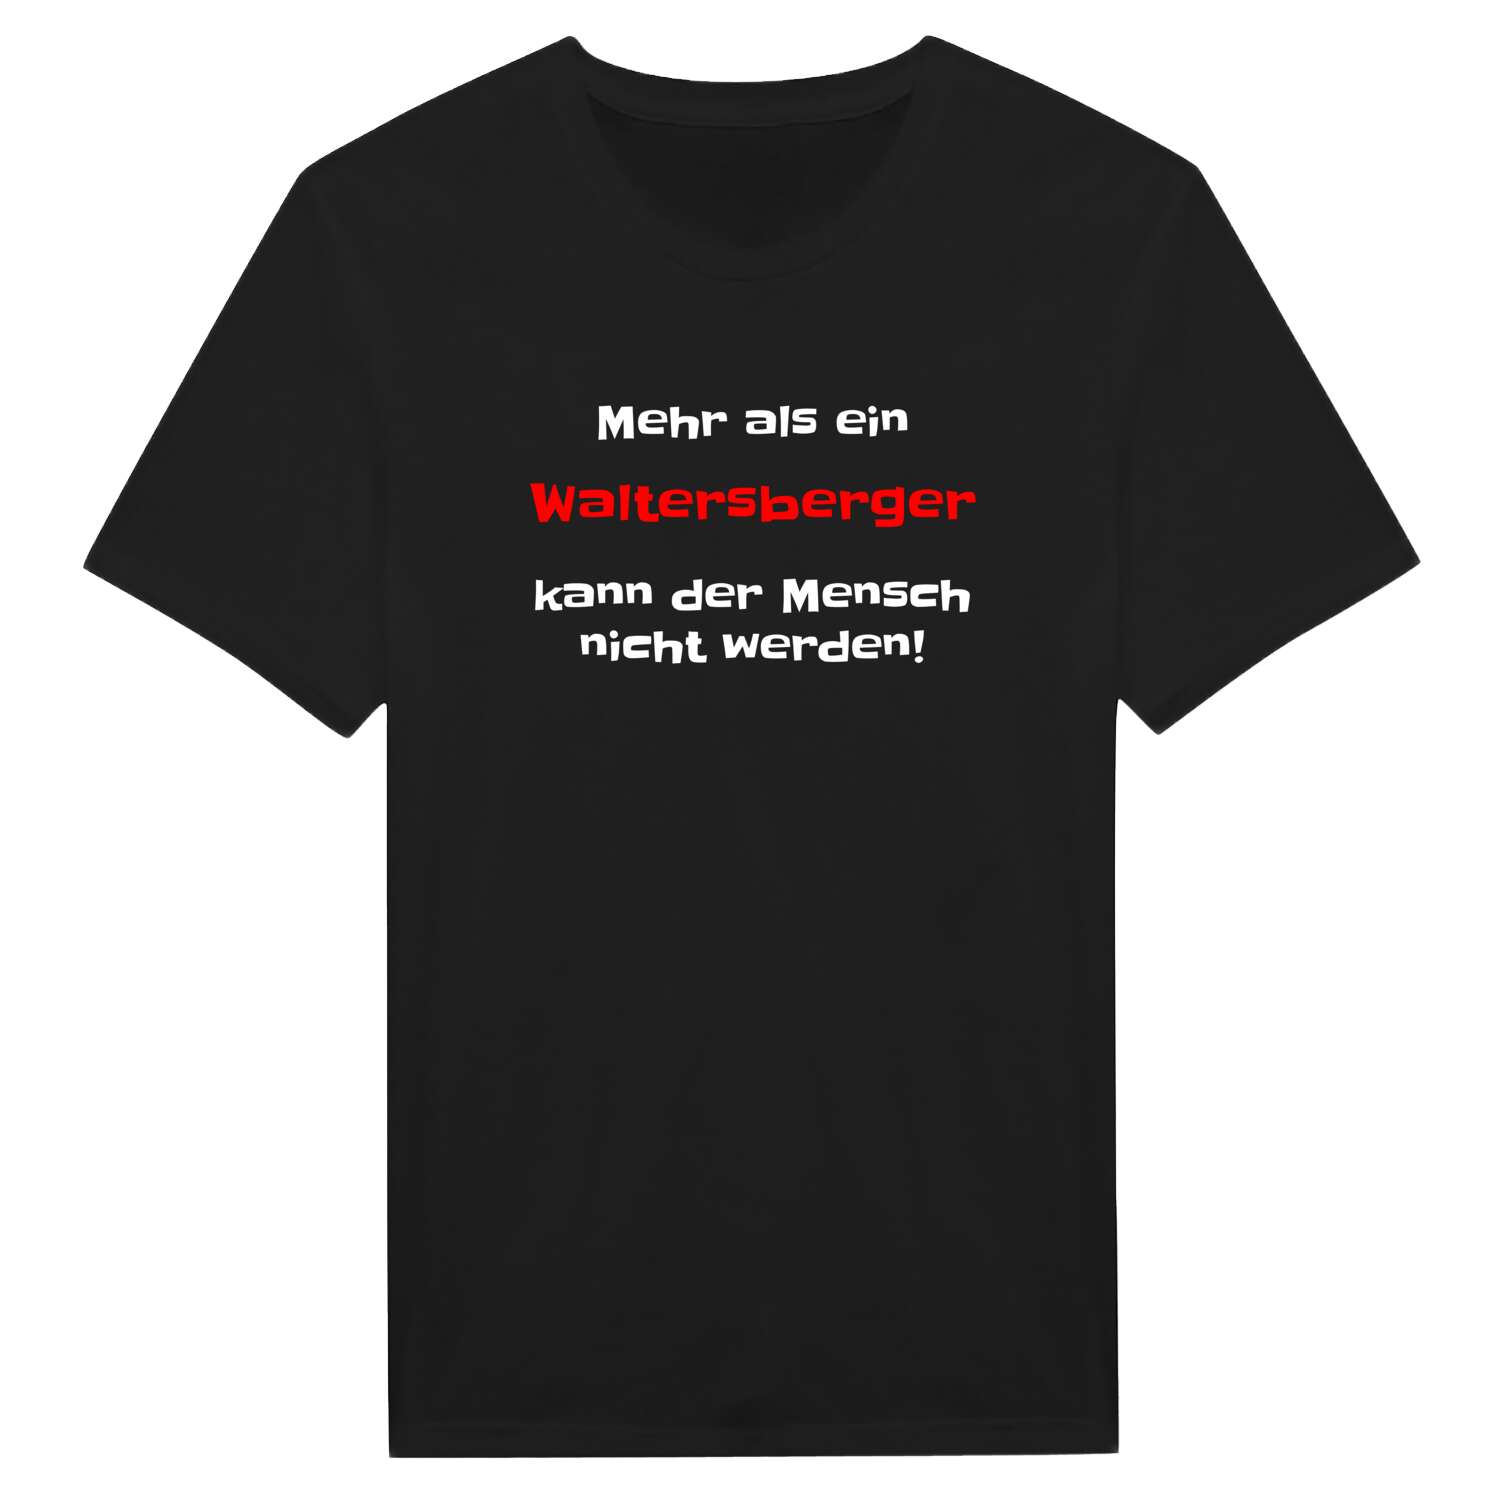 Waltersberg T-Shirt »Mehr als ein«